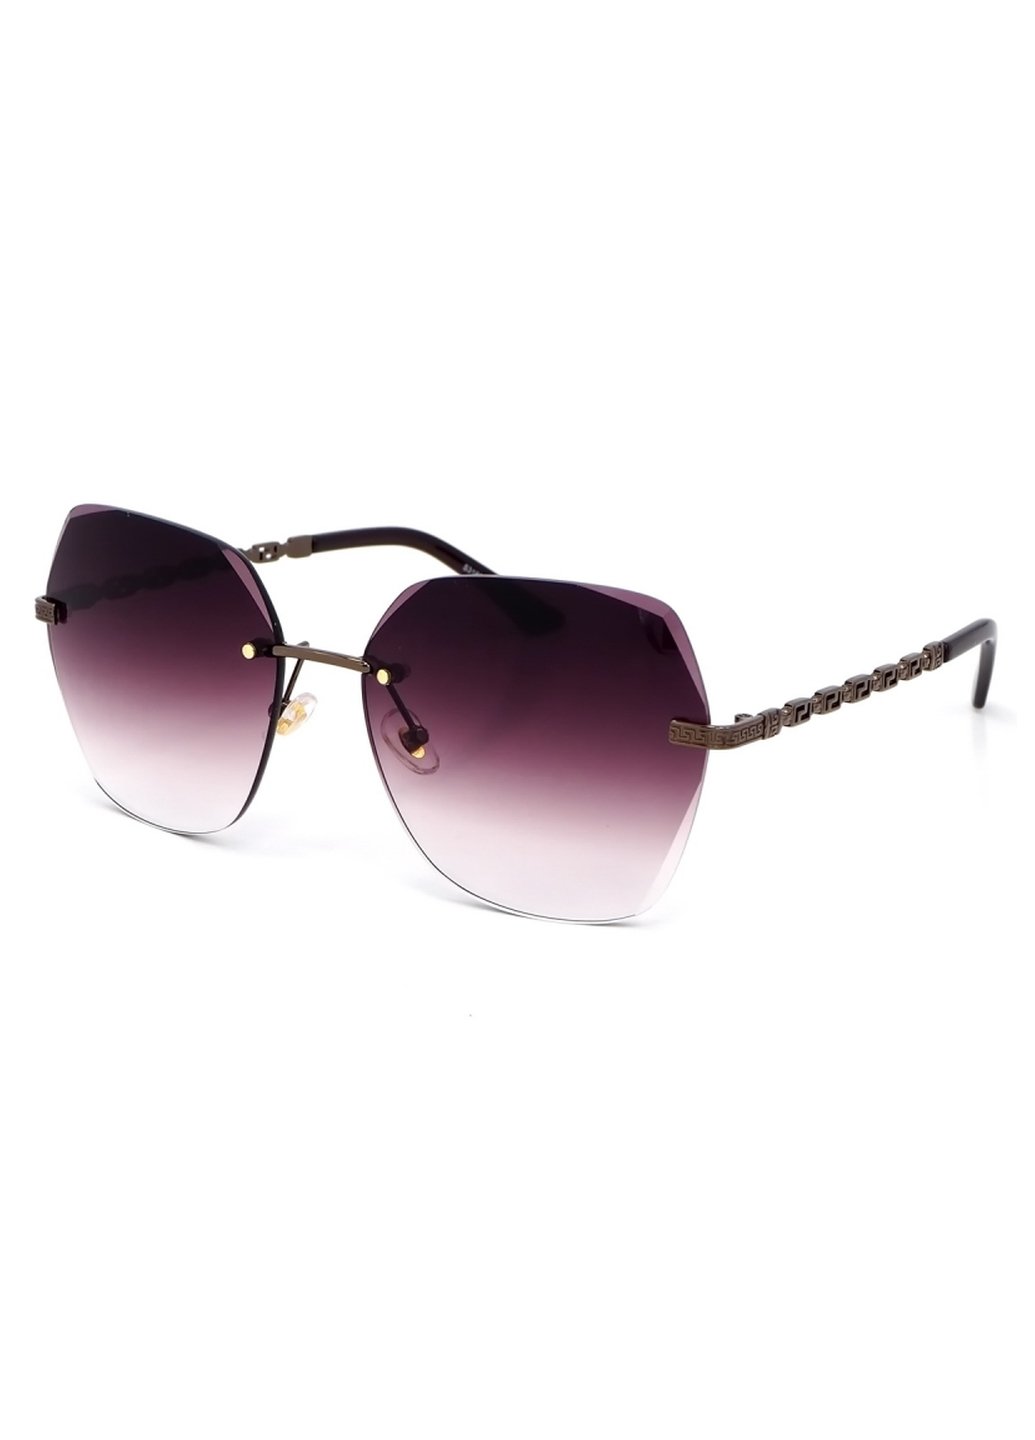 Купить Женские солнцезащитные очки Merlini с поляризацией S31831 117085 - Серый в интернет-магазине